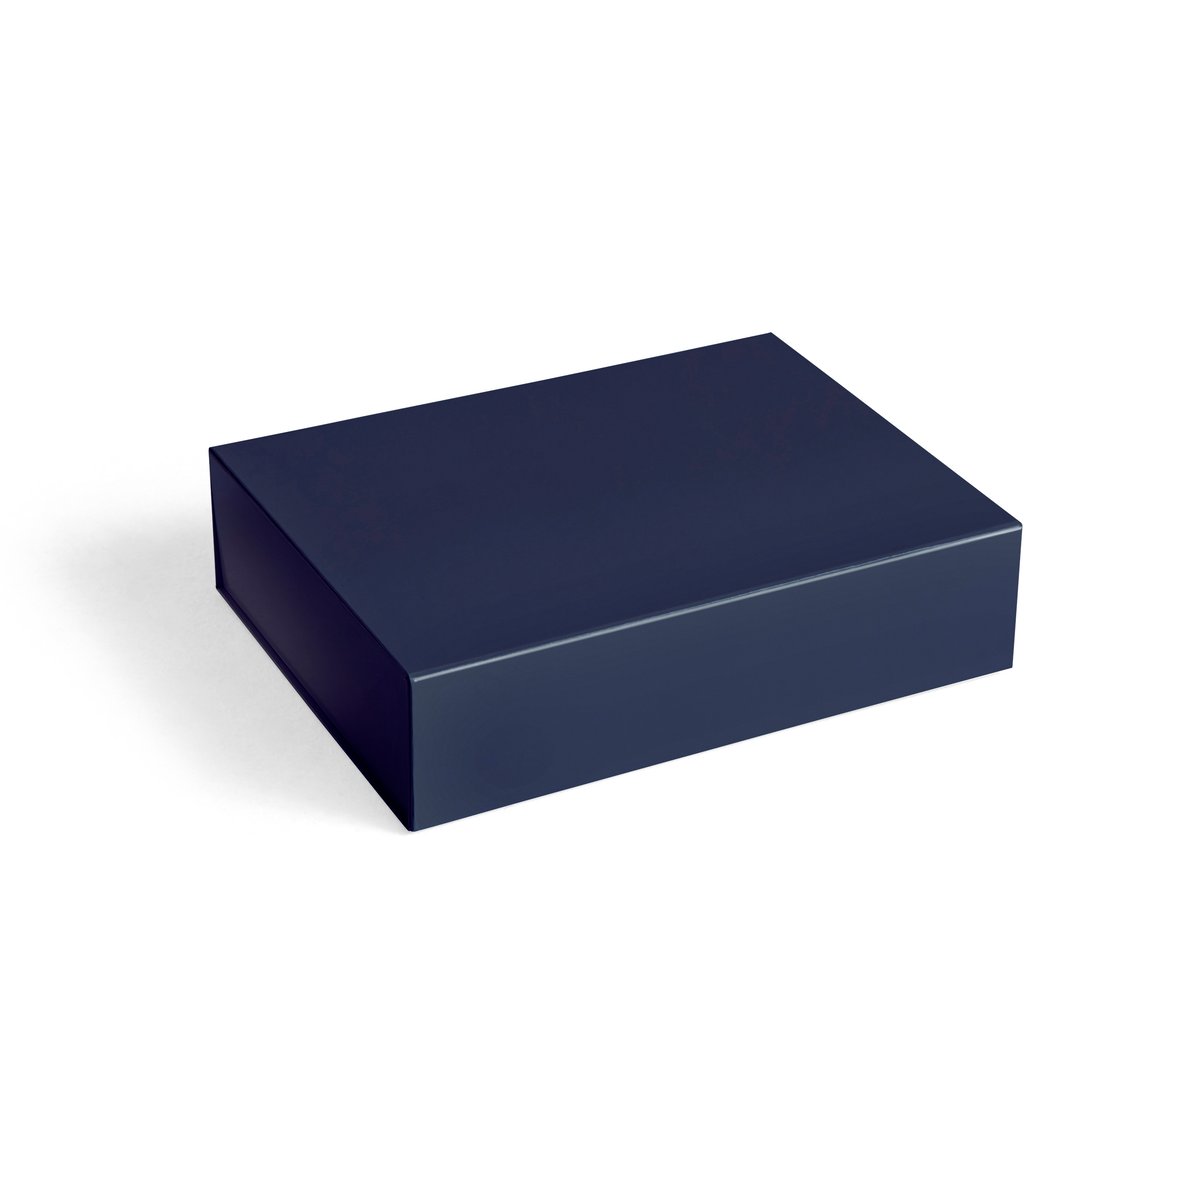 HAY Colour Storage S kannellinen laatikko 25,5×33 cm Midnight blue